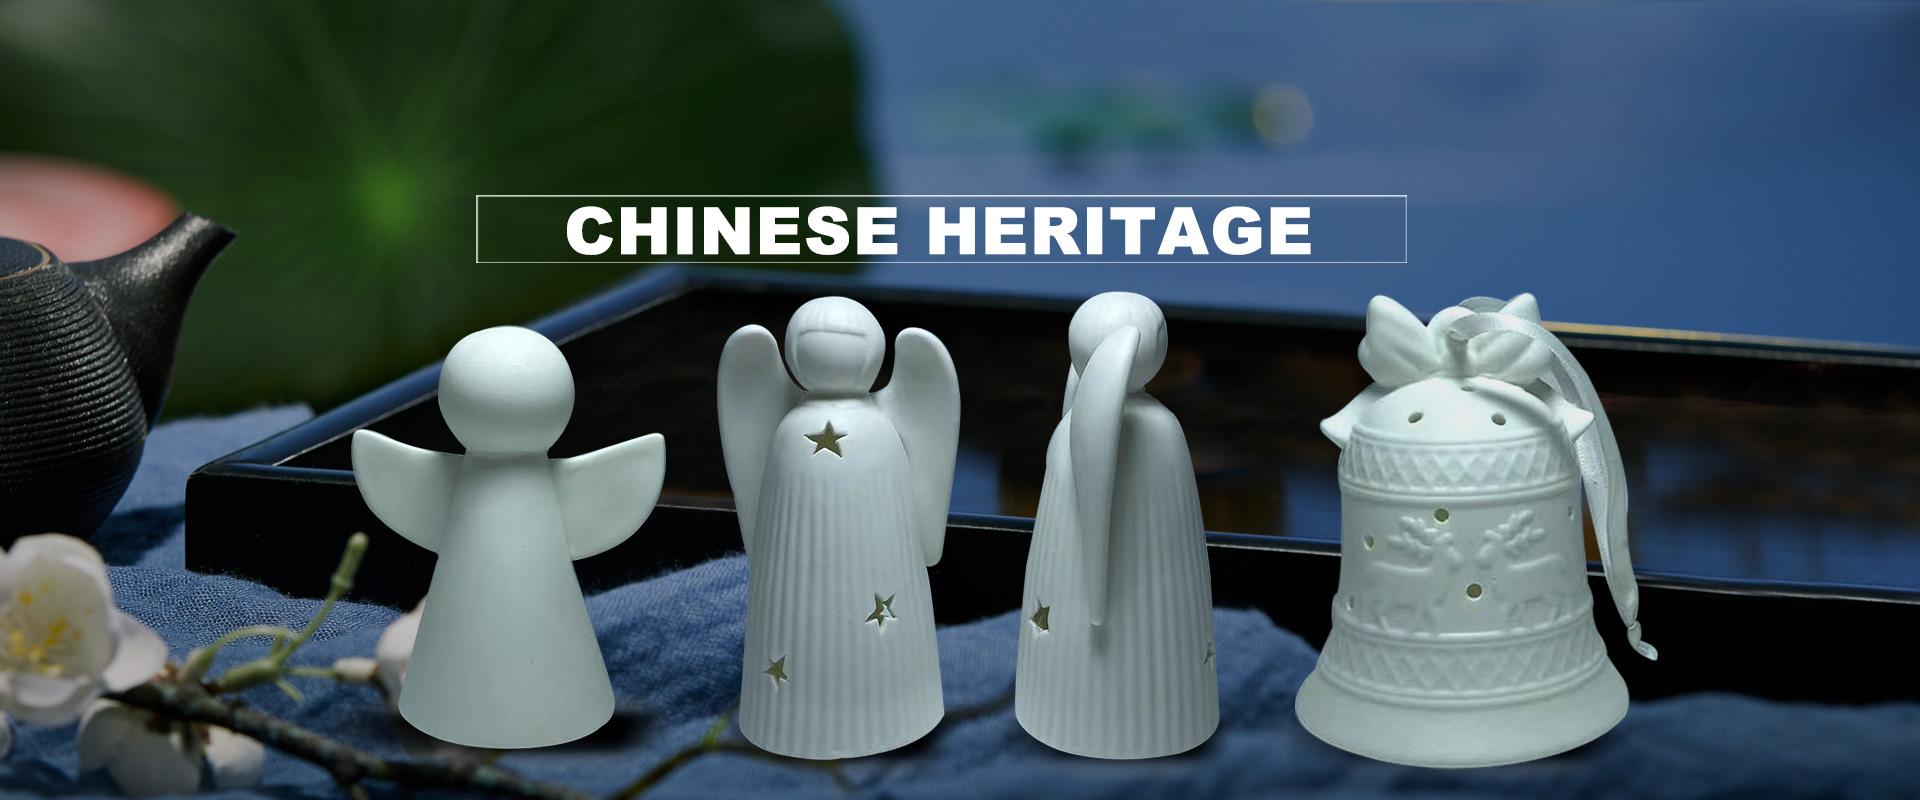 Κινεζική κληρονομιά